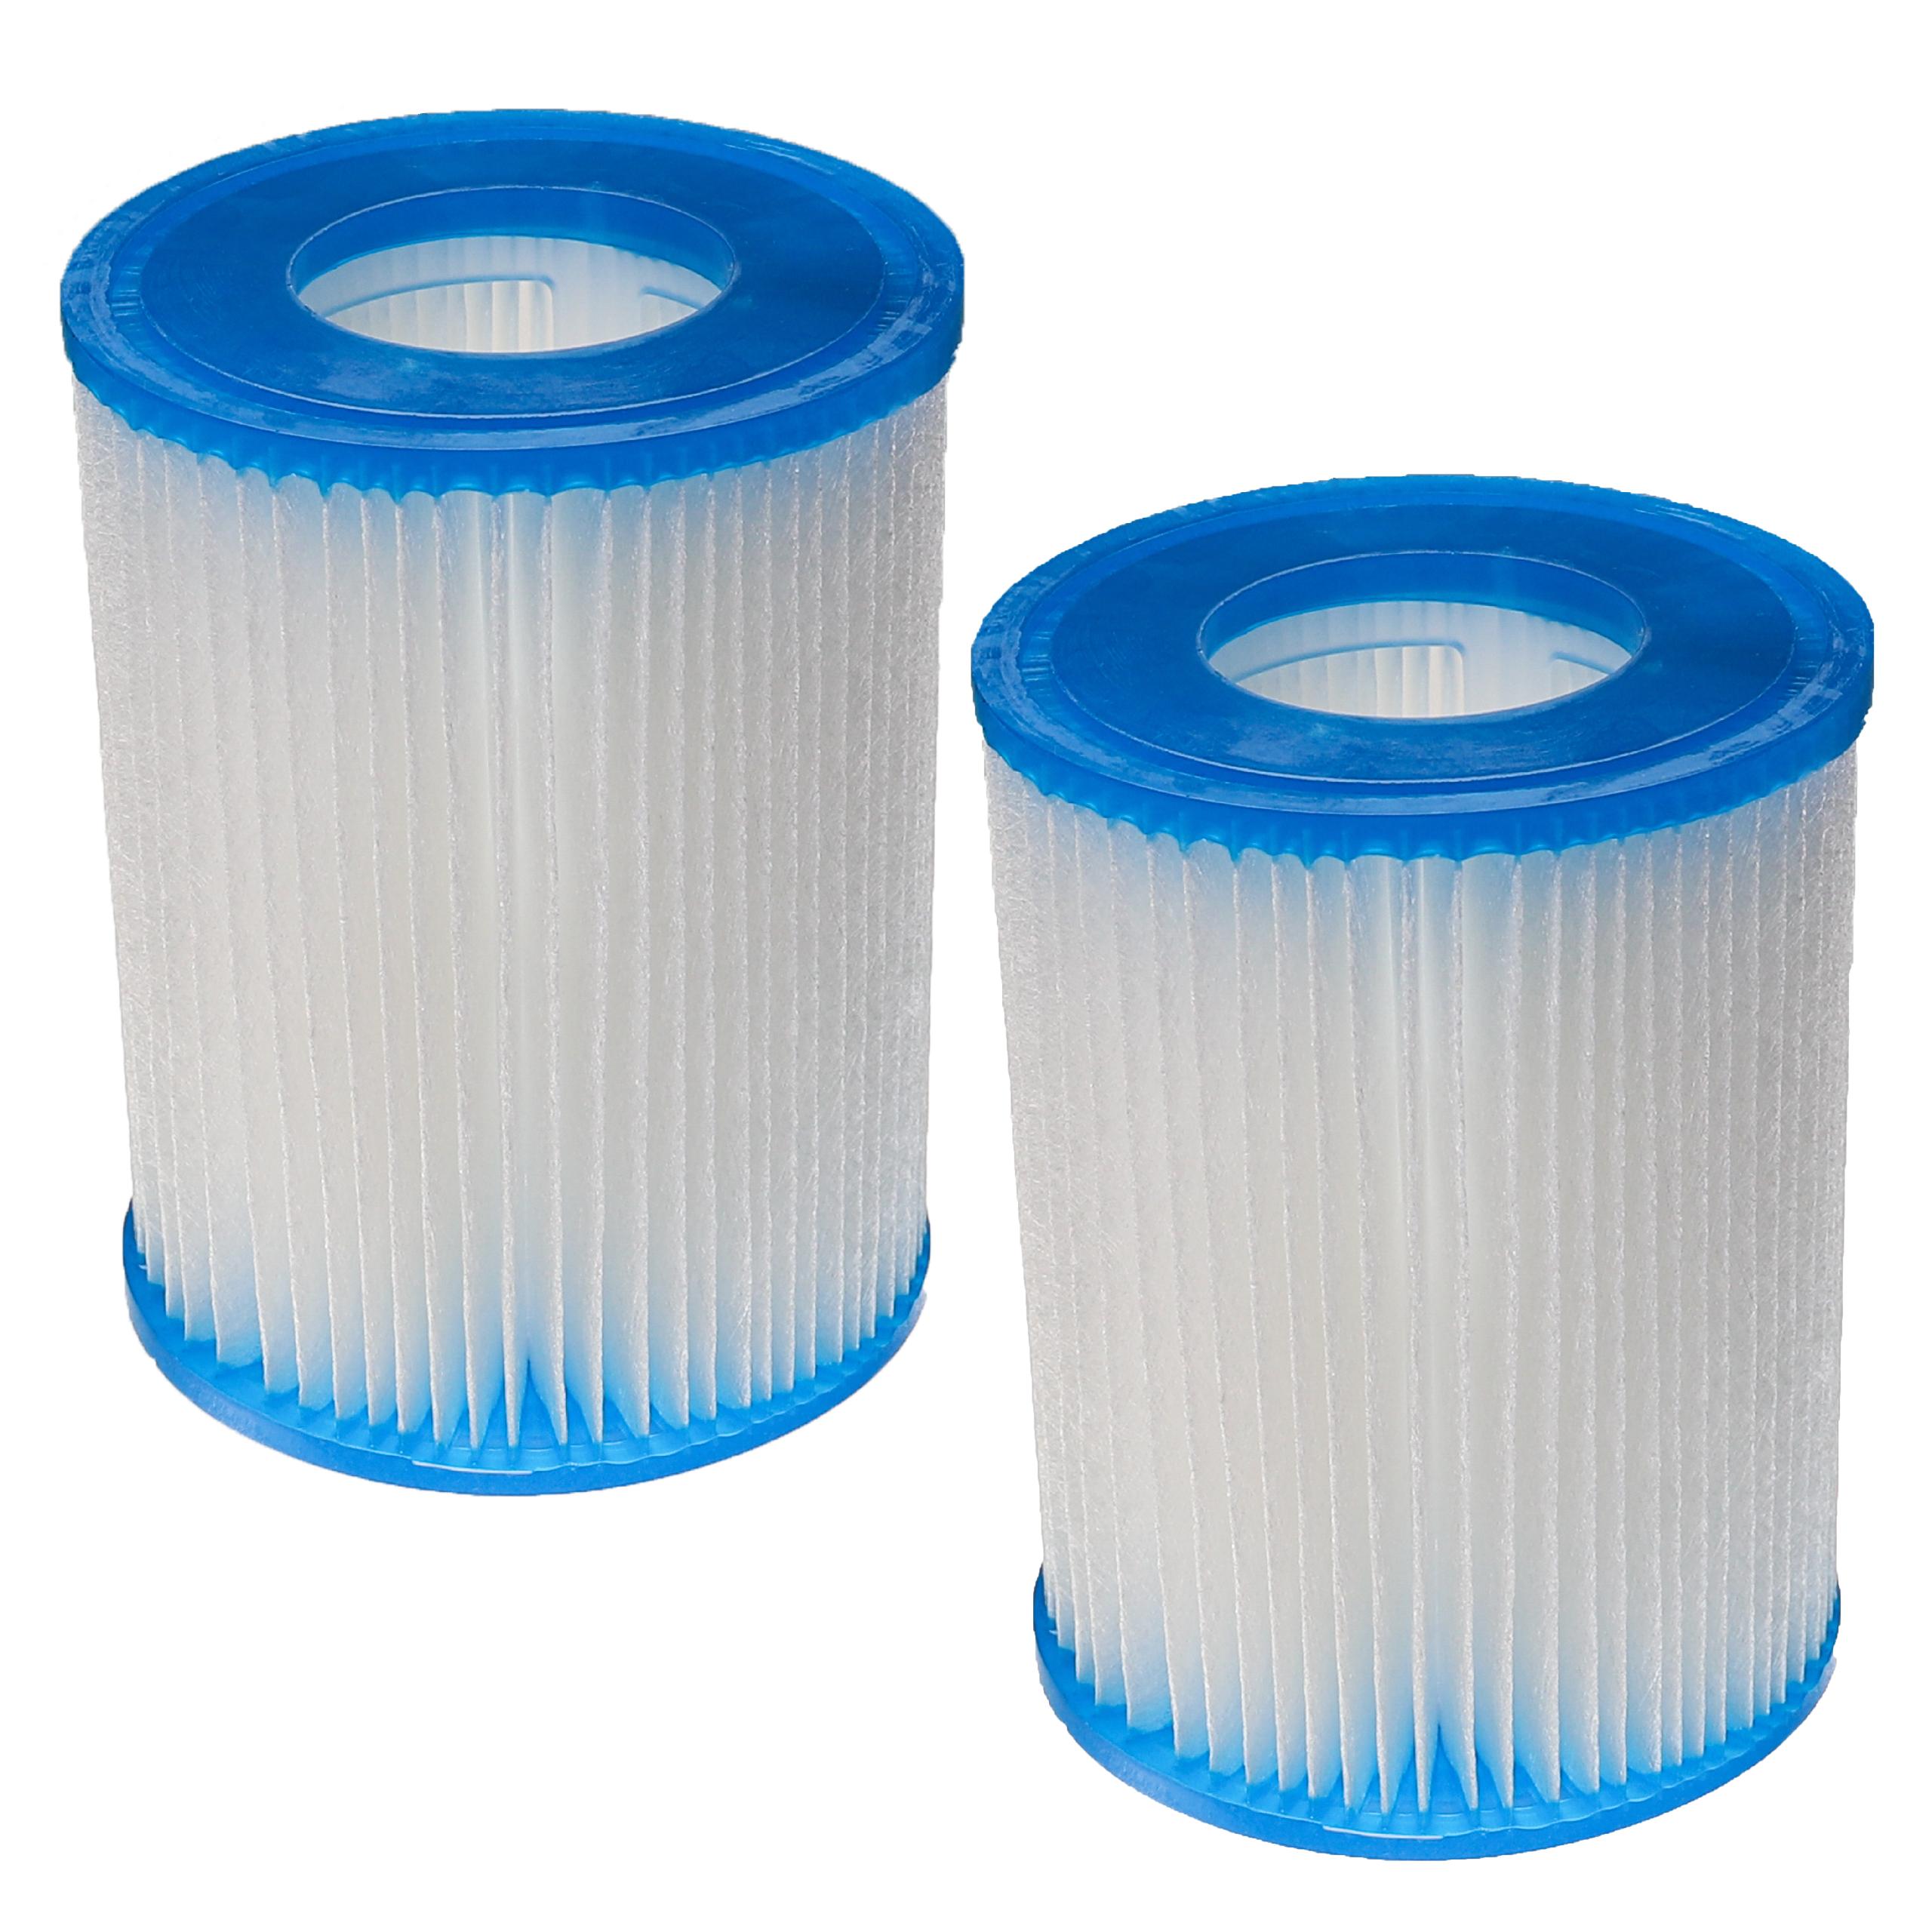 2x Filtres à eau remplace Bestway FD2137, Typ II pour piscine, pompe de filtration Bestway - Cartouche filtre